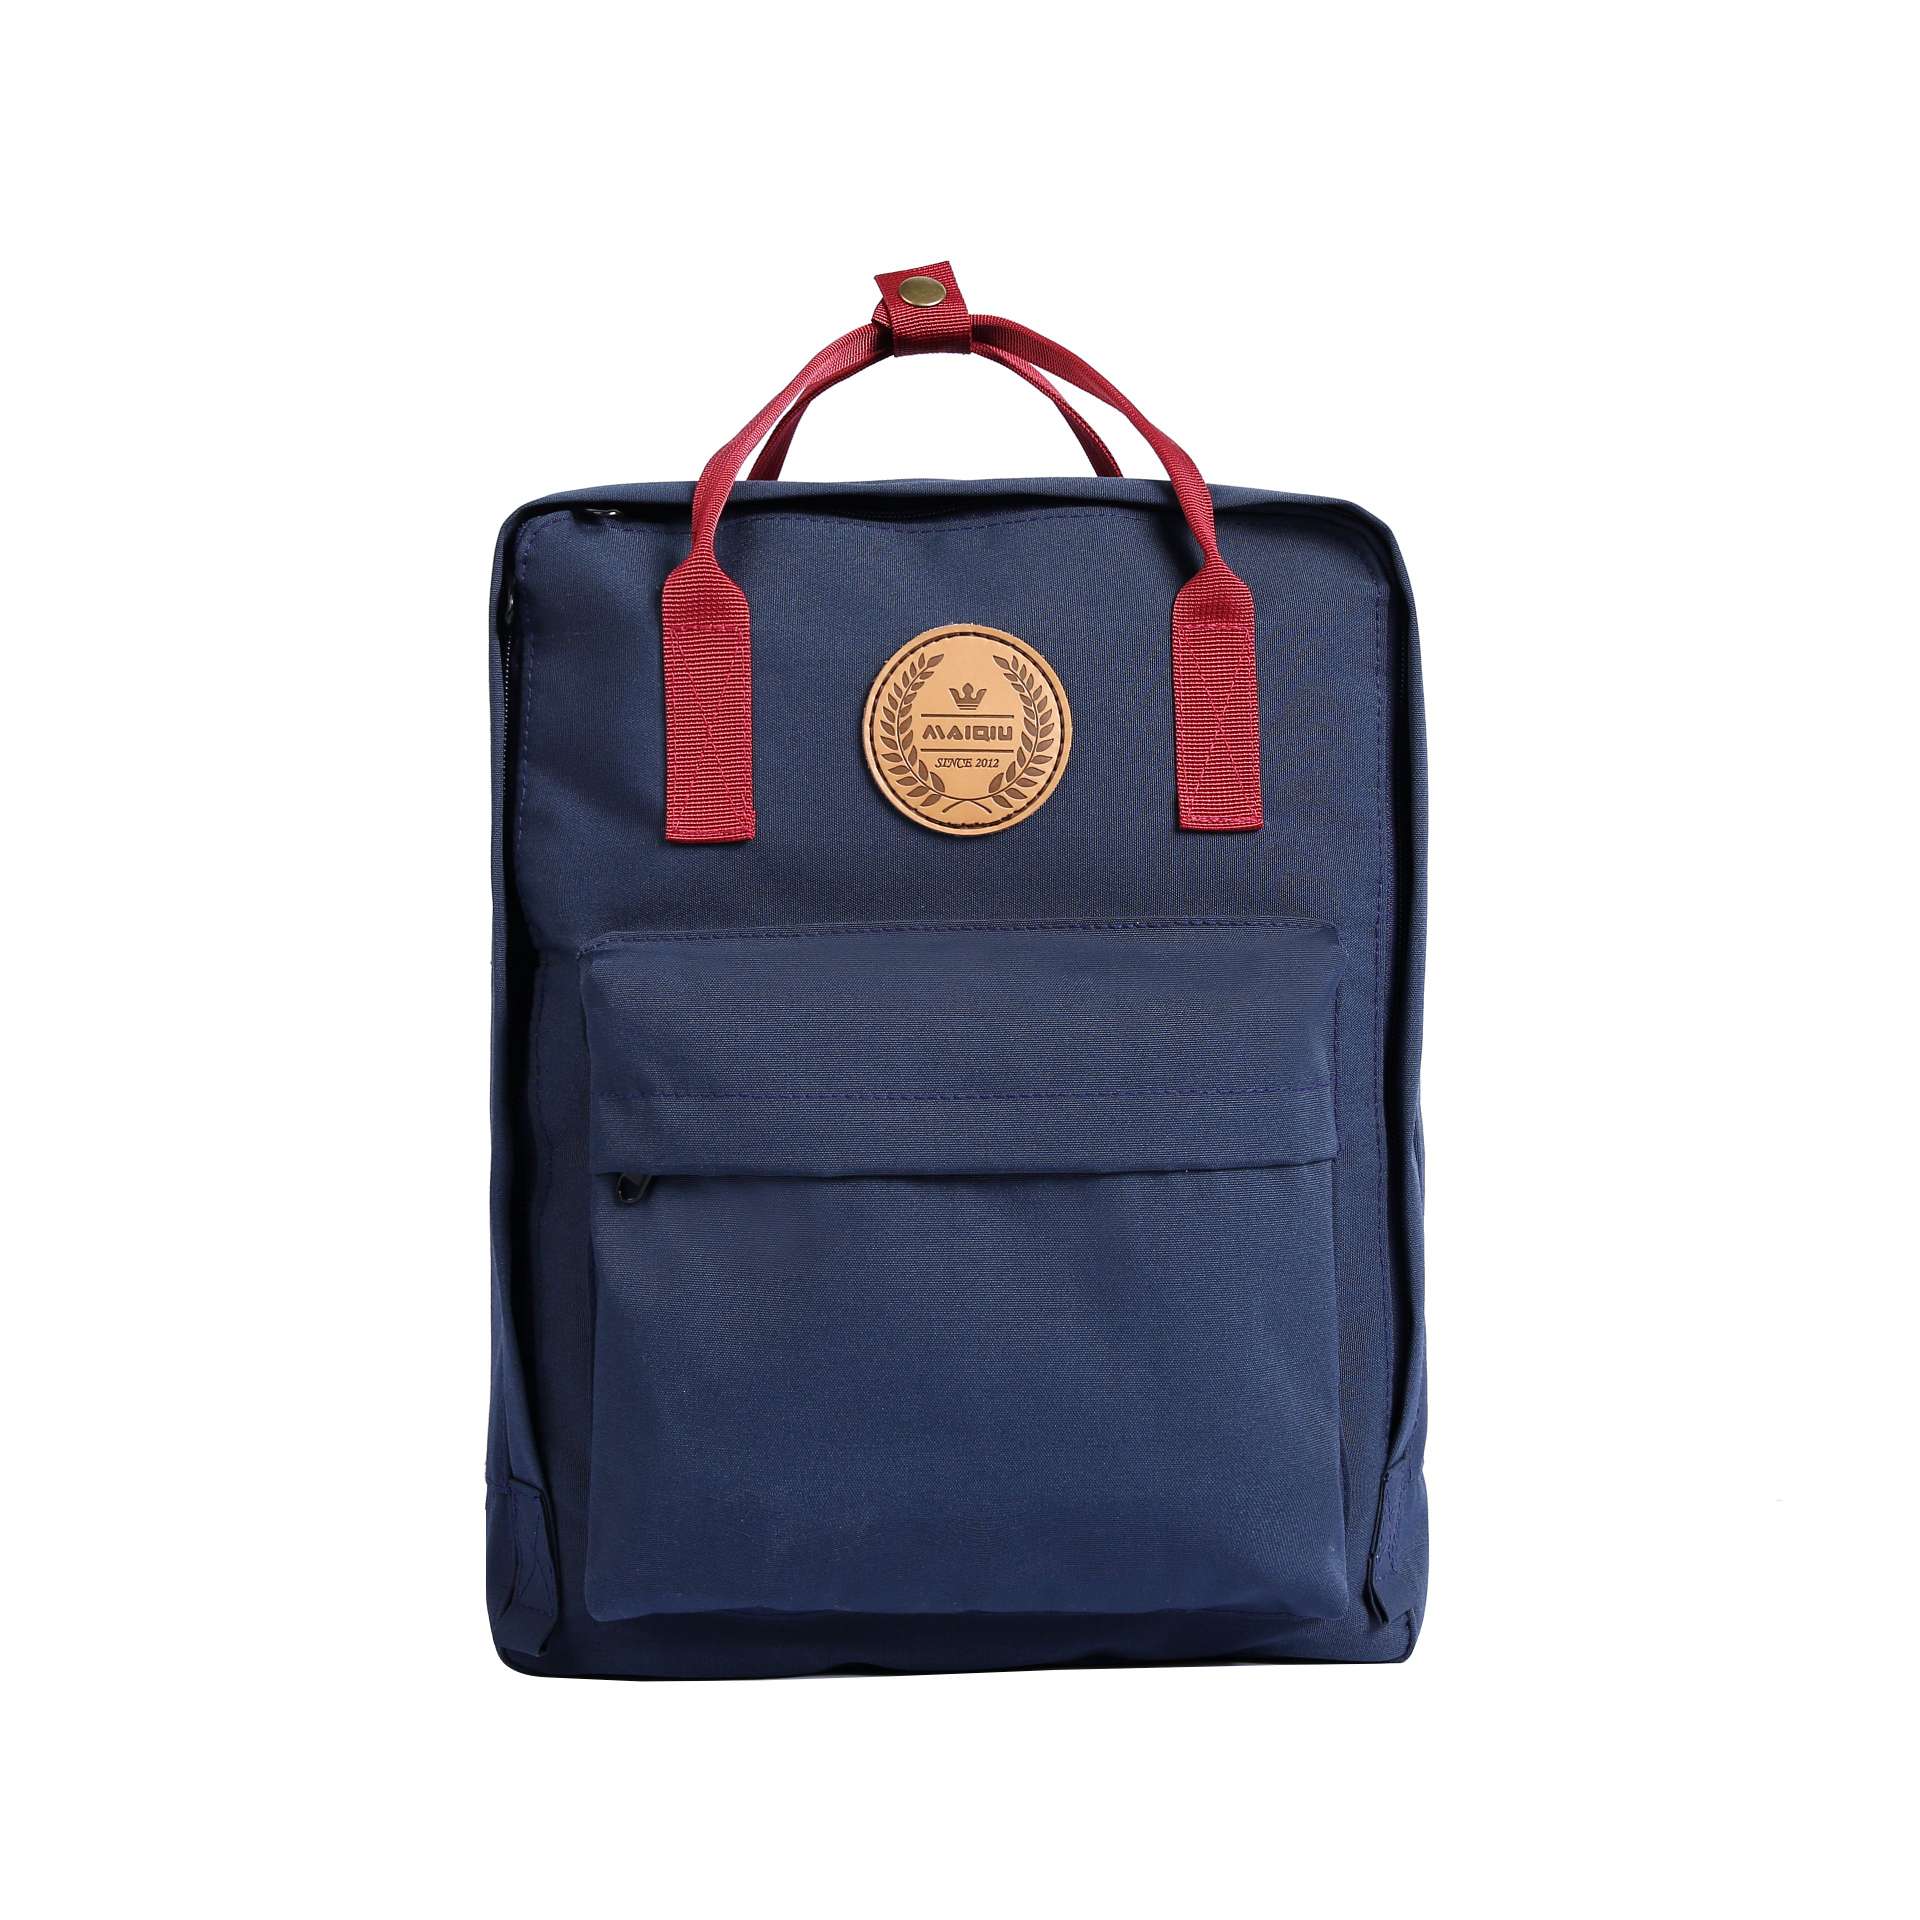 学生书包背包旅行包补习袋详情图1